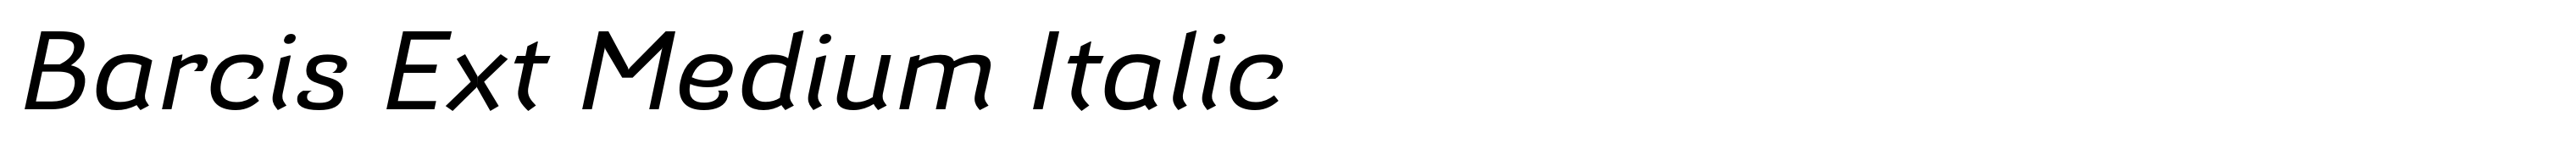 Barcis Ext Medium Italic